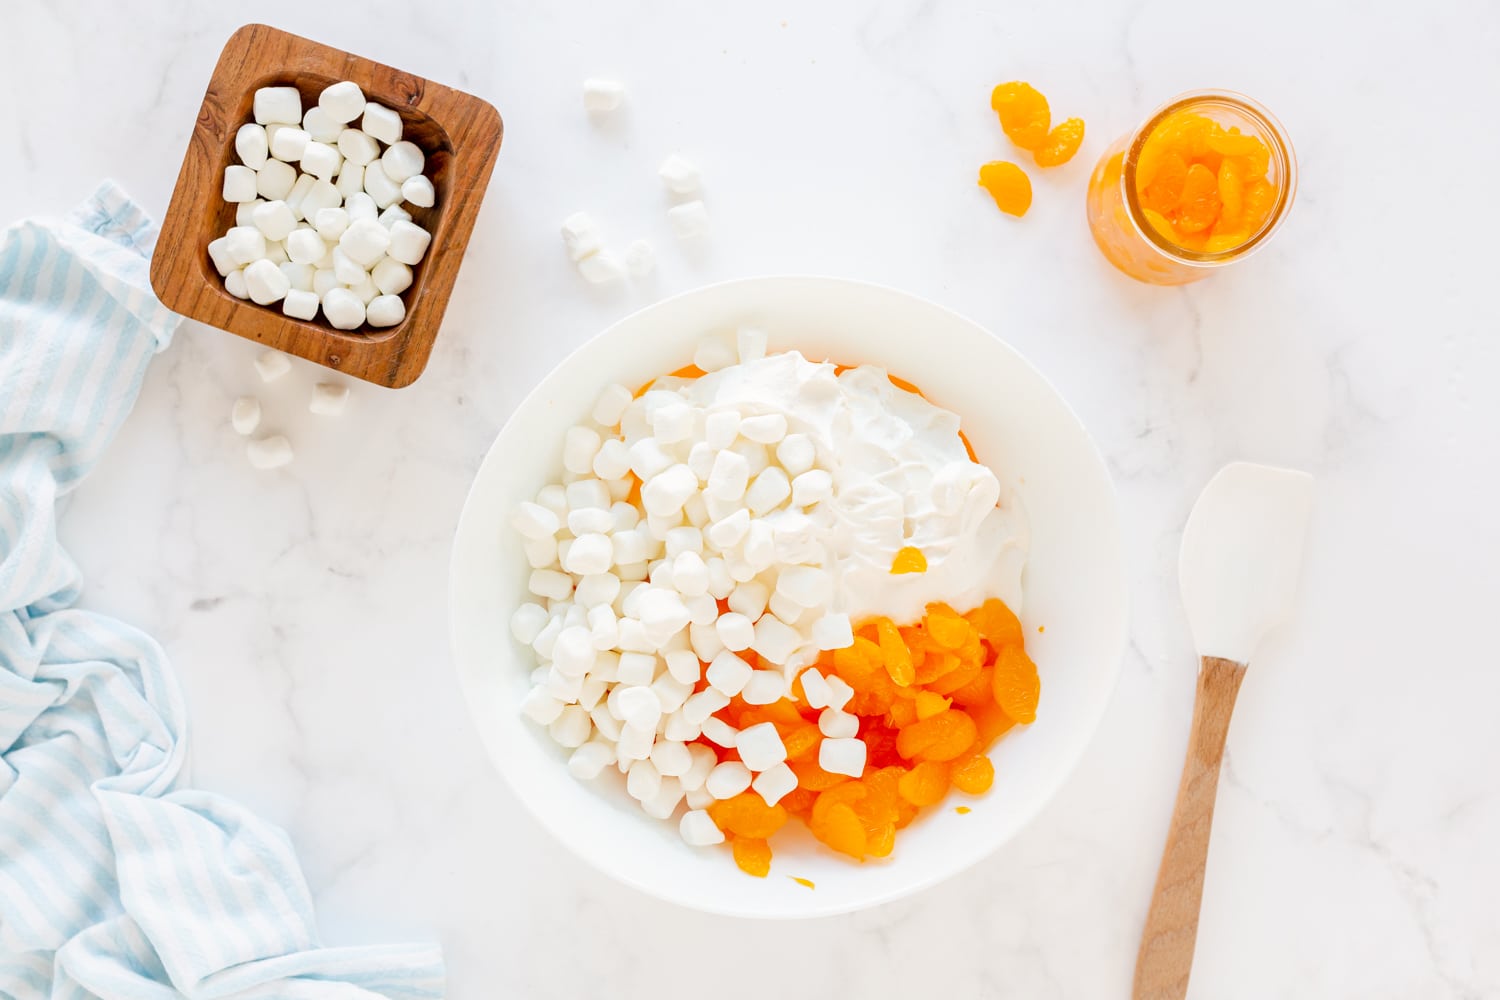 marshmallow, mandarin oranges in mixing bowl